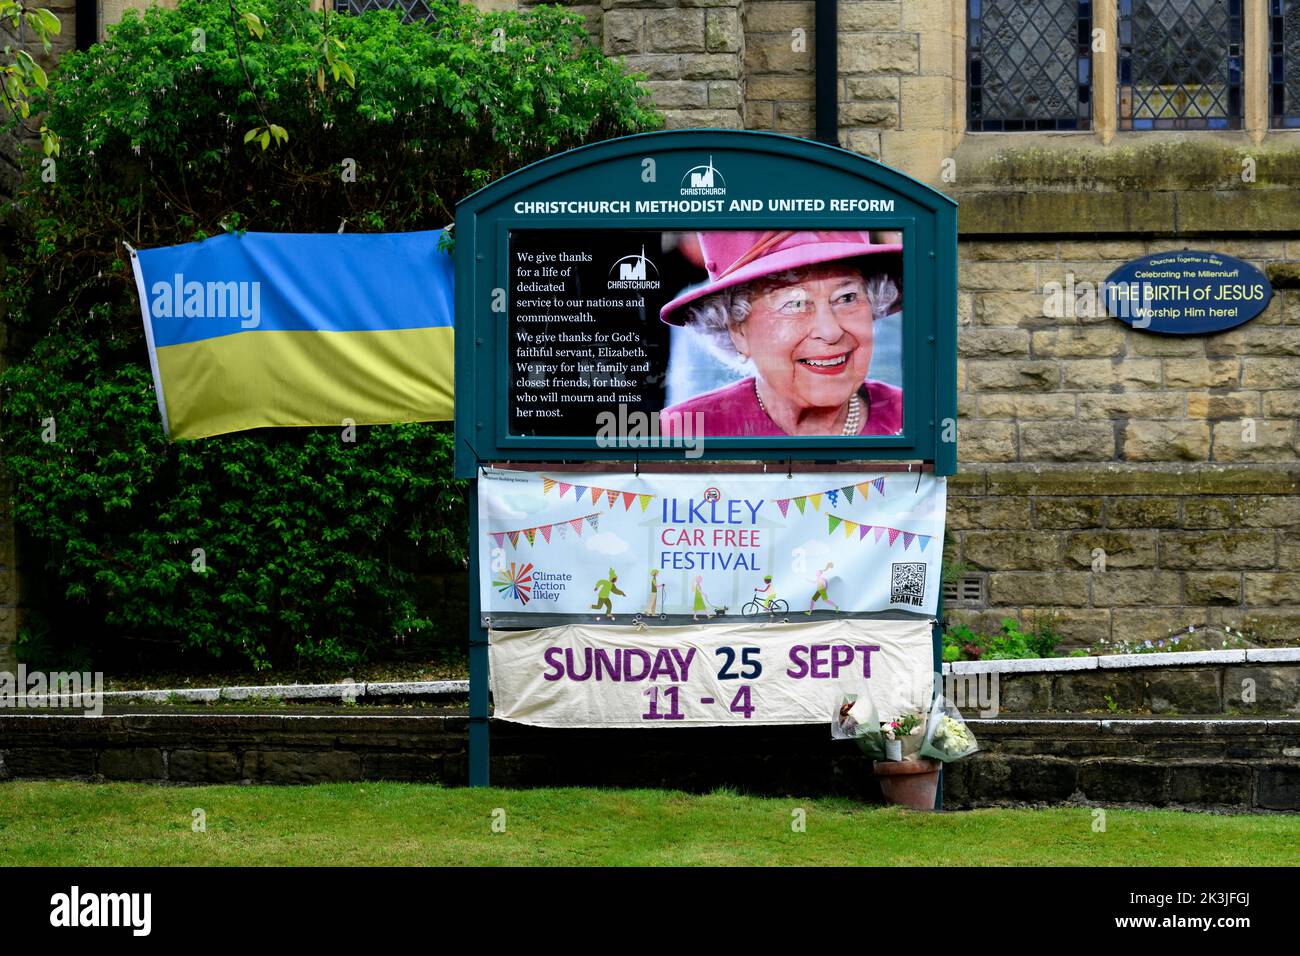 La mort de la reine (émouvante photo de tableau d'affichage en couleur, en souvenir de la commémoration de ses respects envers Elizabeth 2) Ilkley Yorkshire Angleterre Royaume-Uni. Banque D'Images